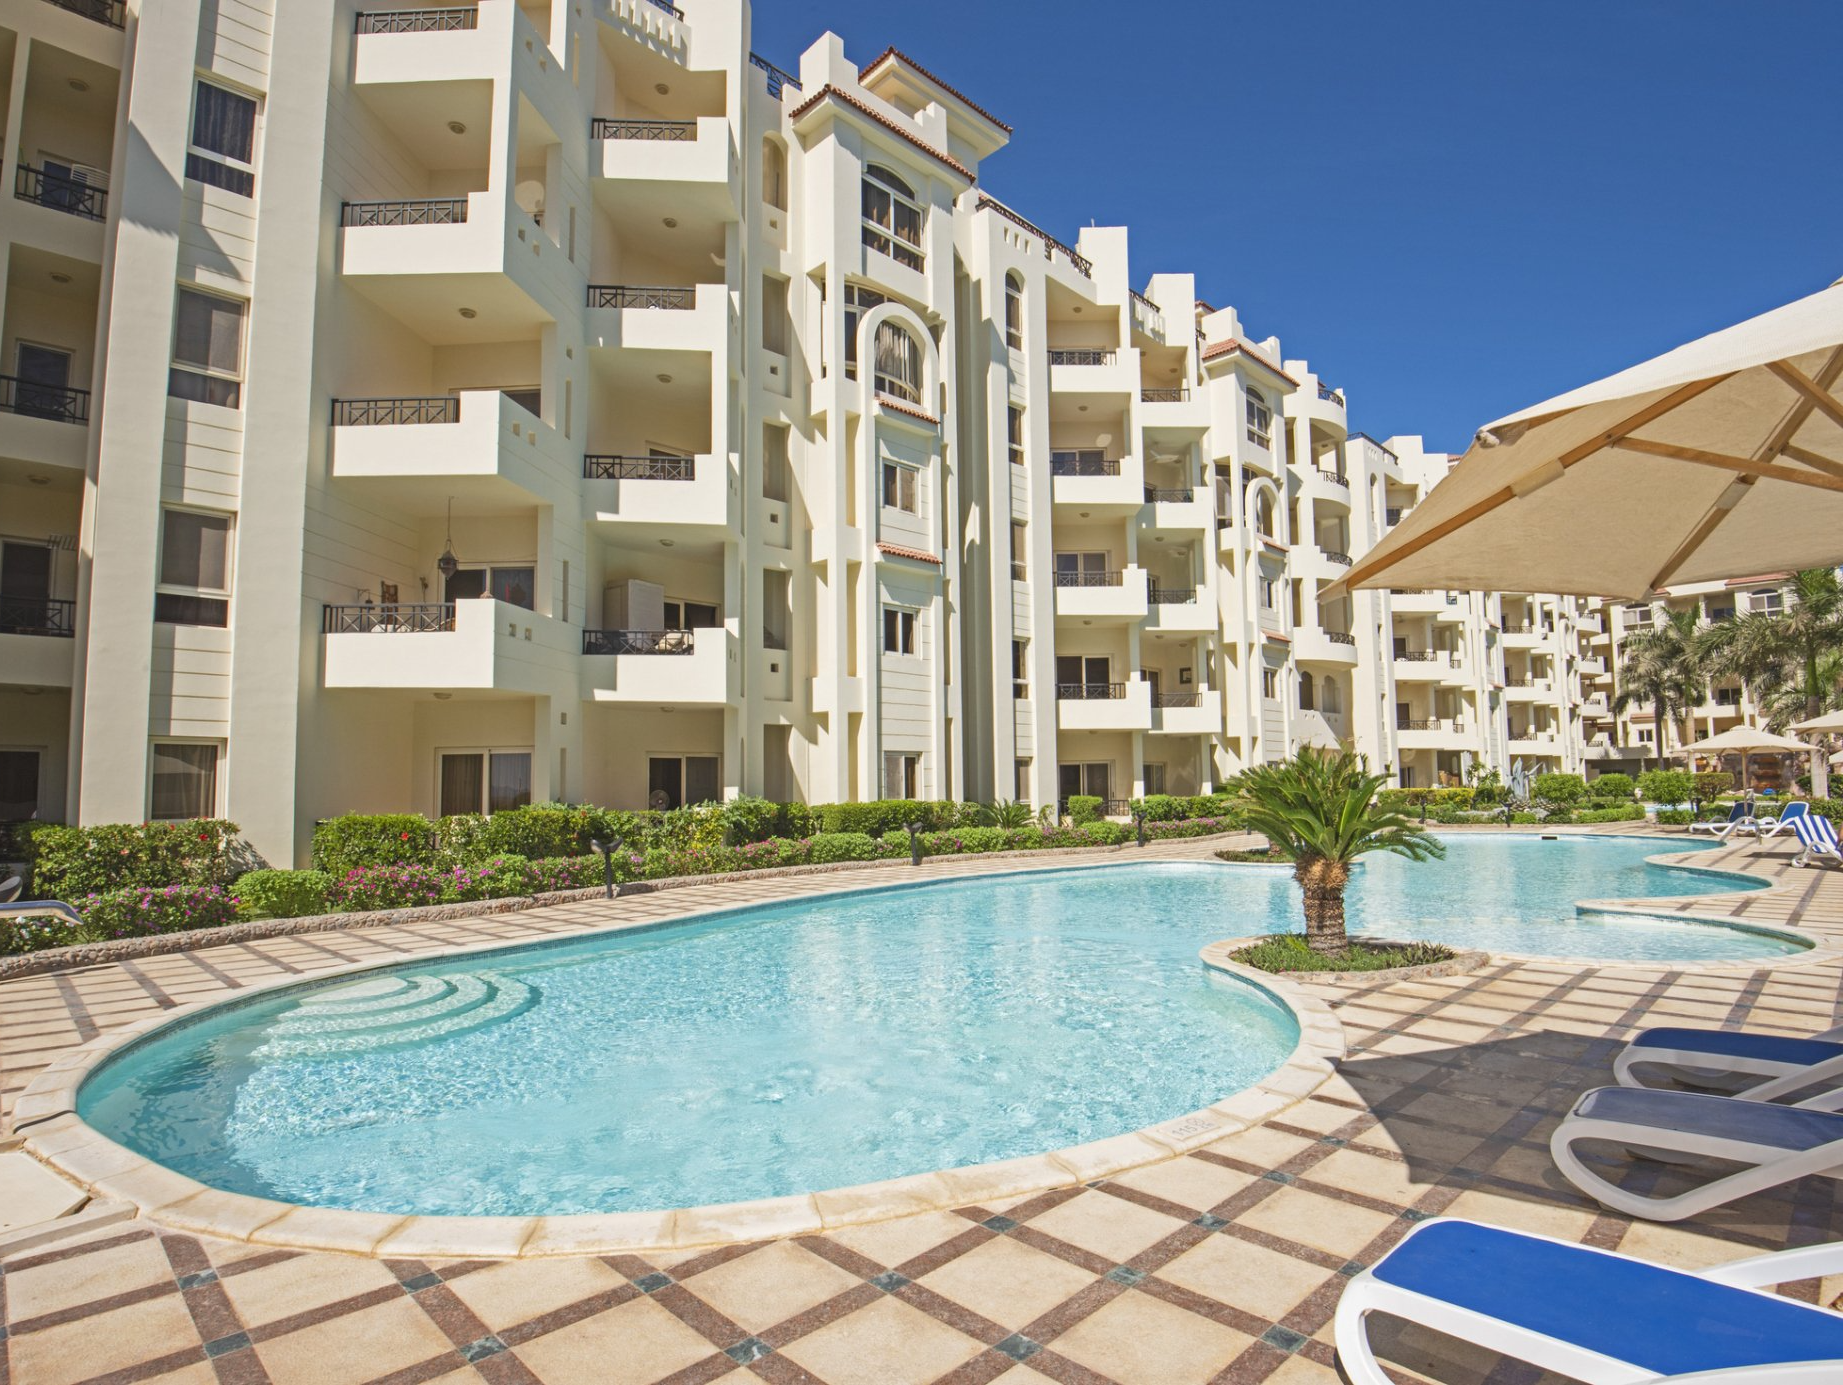 Pool In A Luxury Tropical Hotel Resort — Punta Gorda, FL — Holiday Pools of West Florida Inc